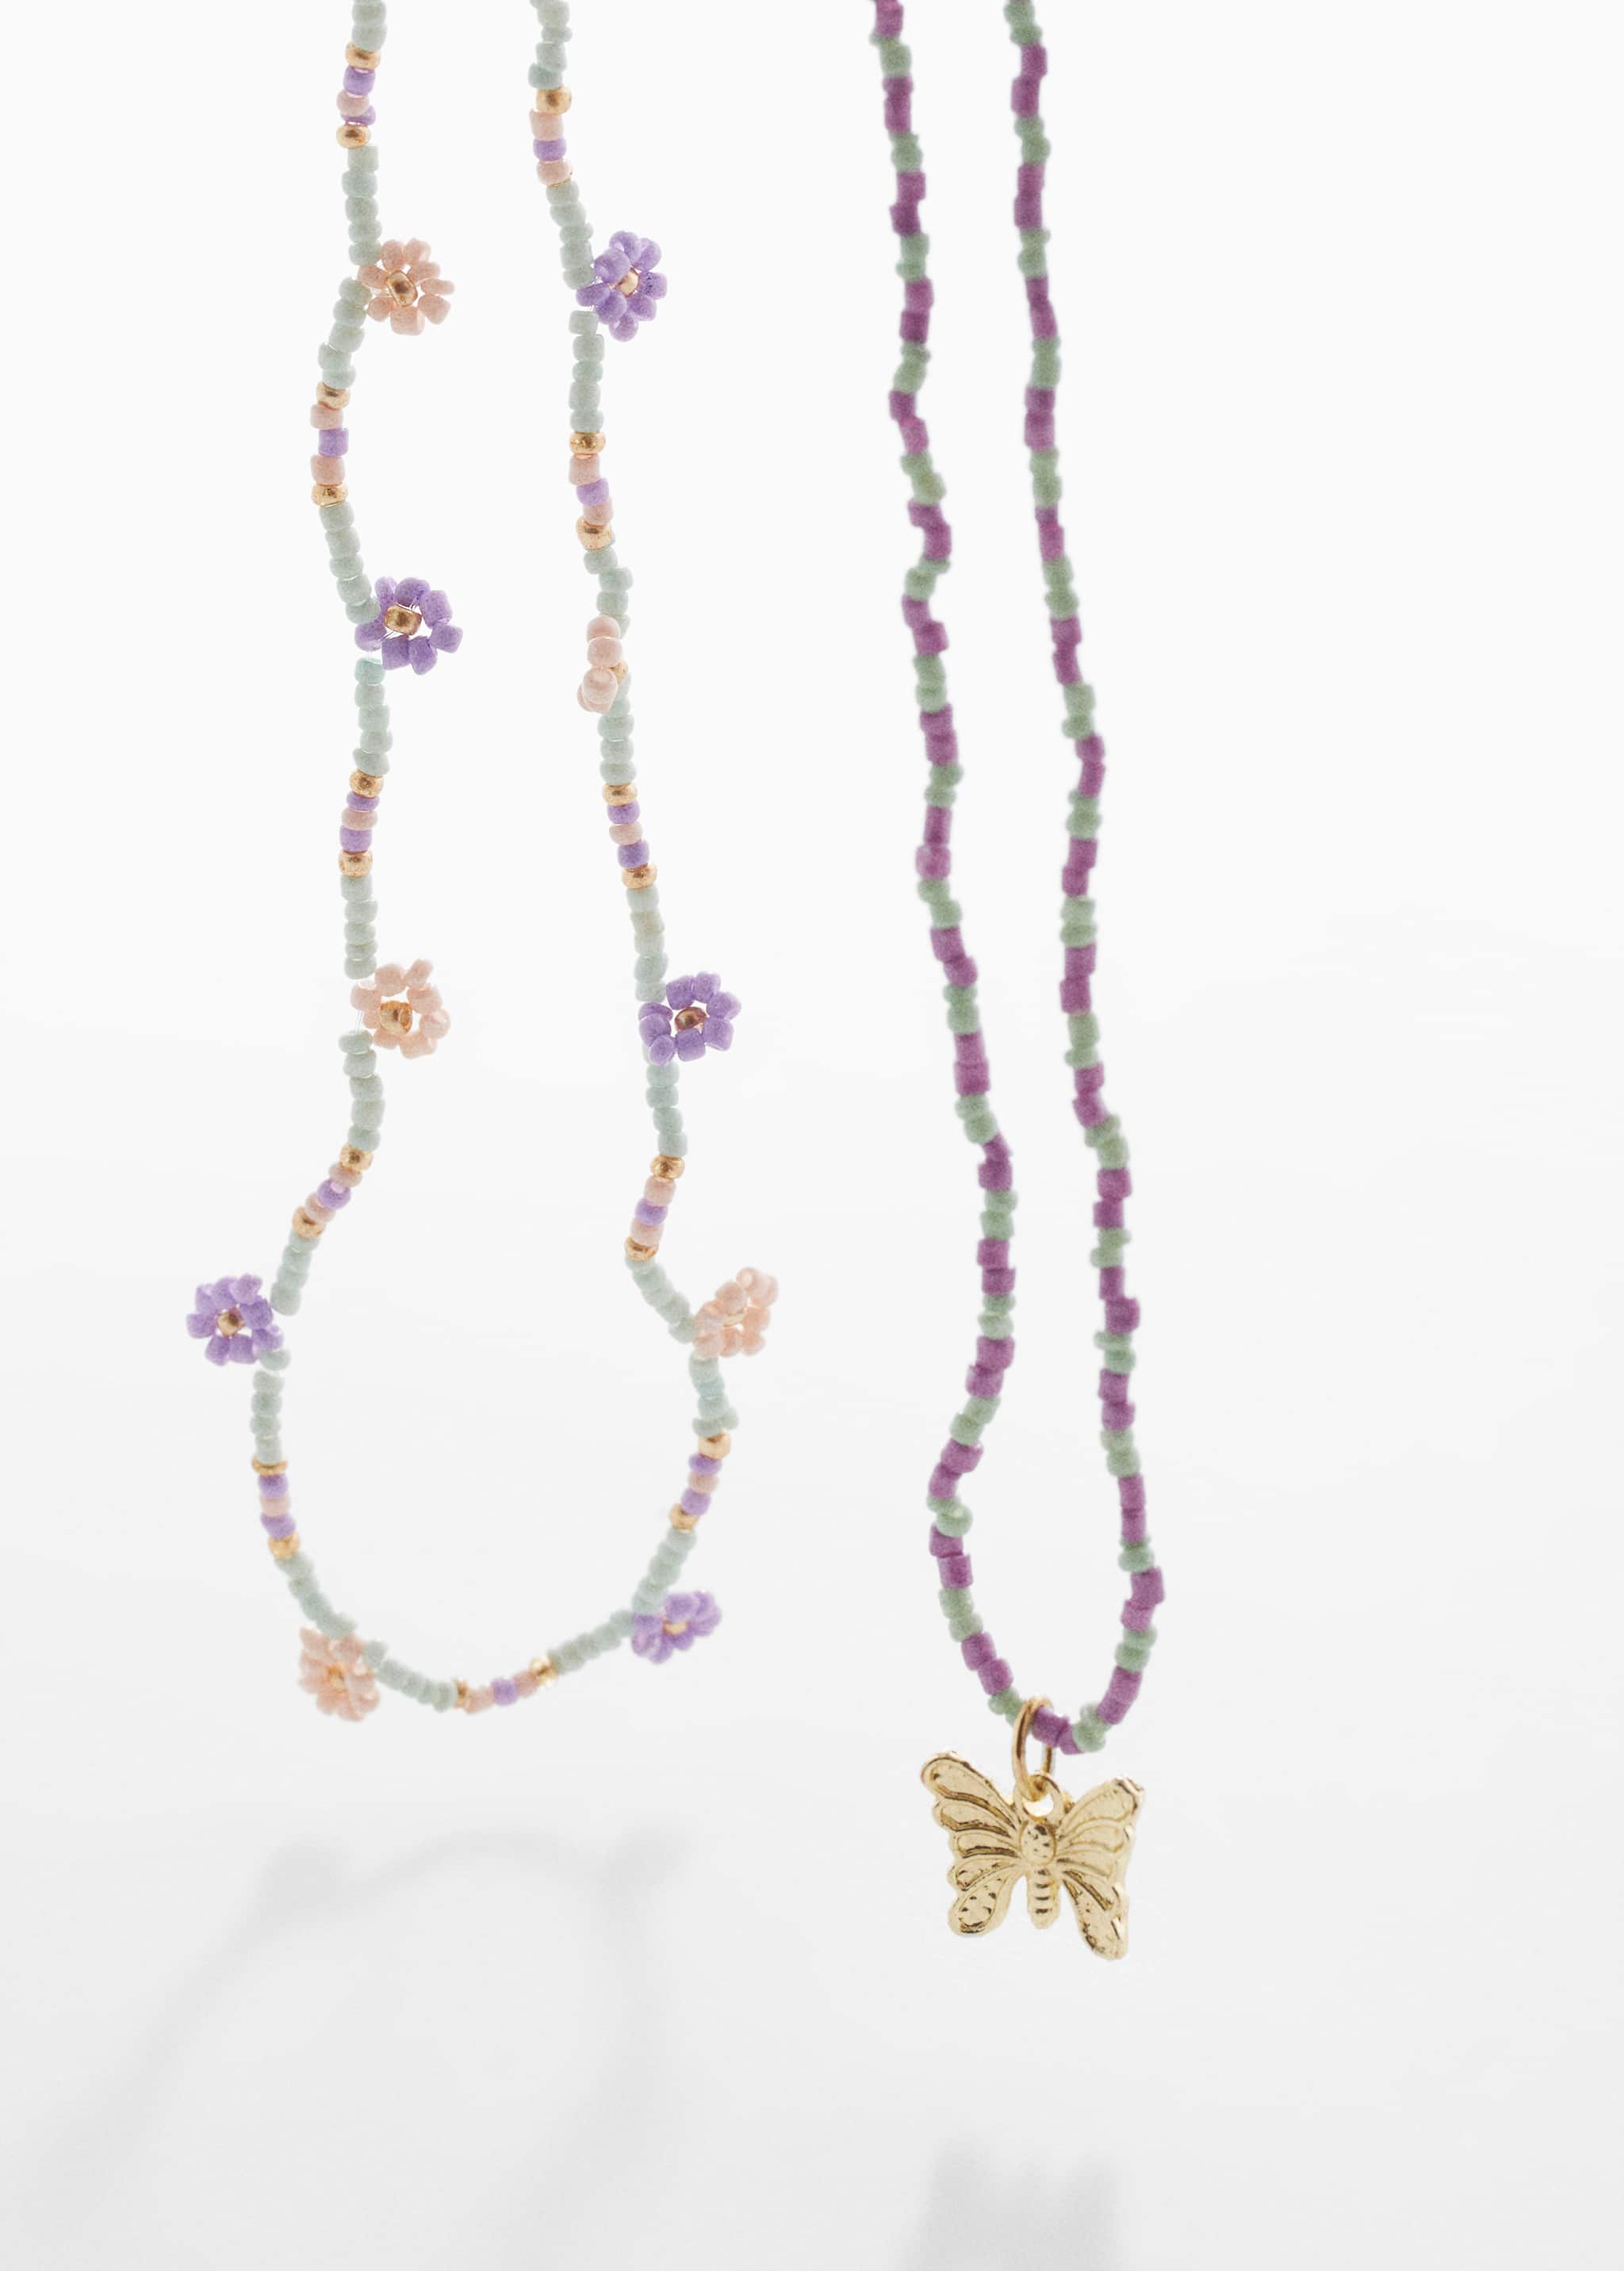 Pack of 2 pendant necklaces - Medium plane